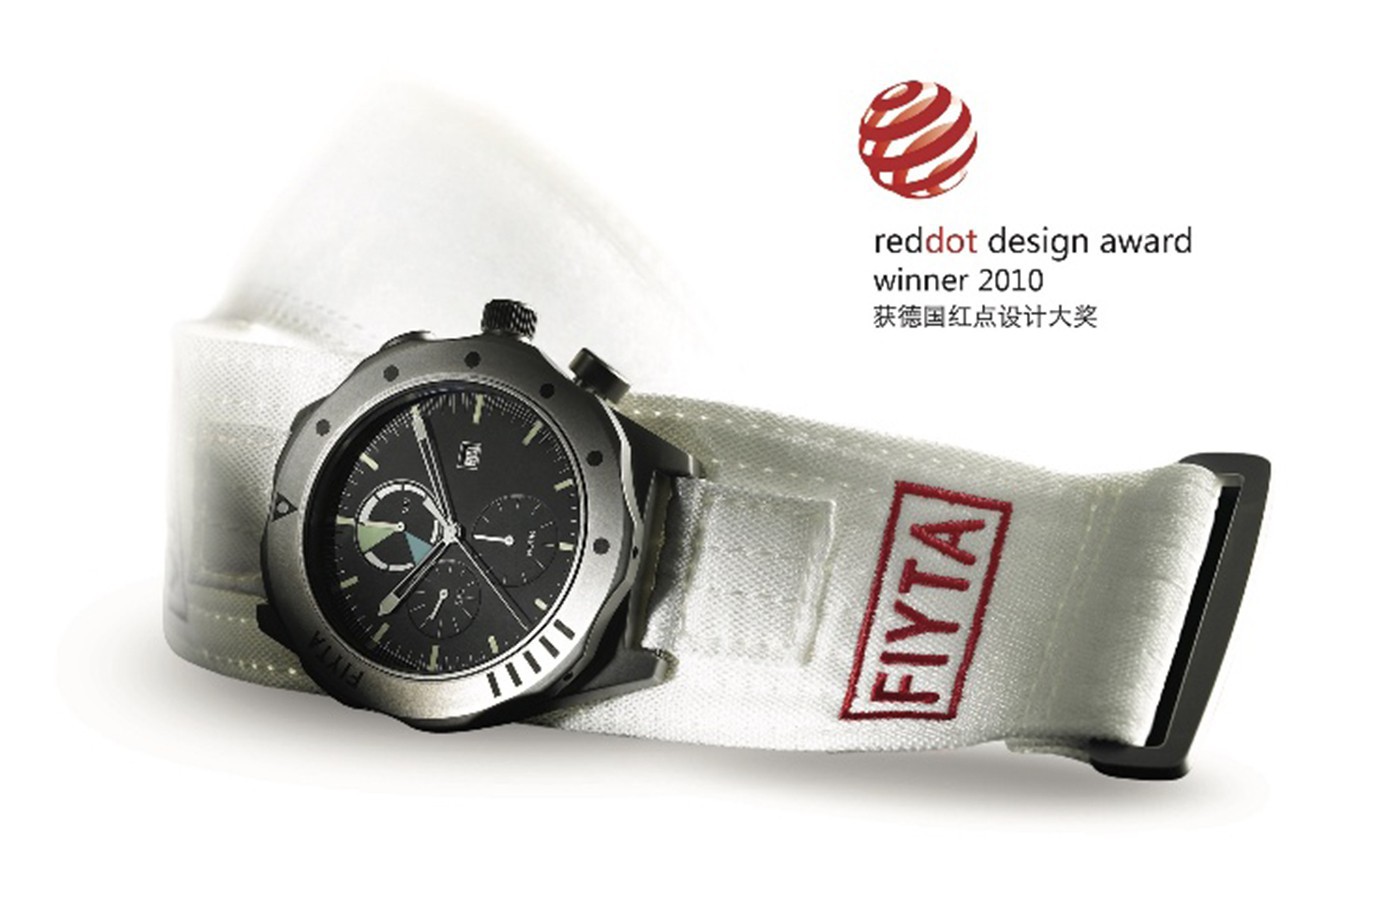 致敬中国航天 品鉴飞亚达表航天系列复刻款腕表